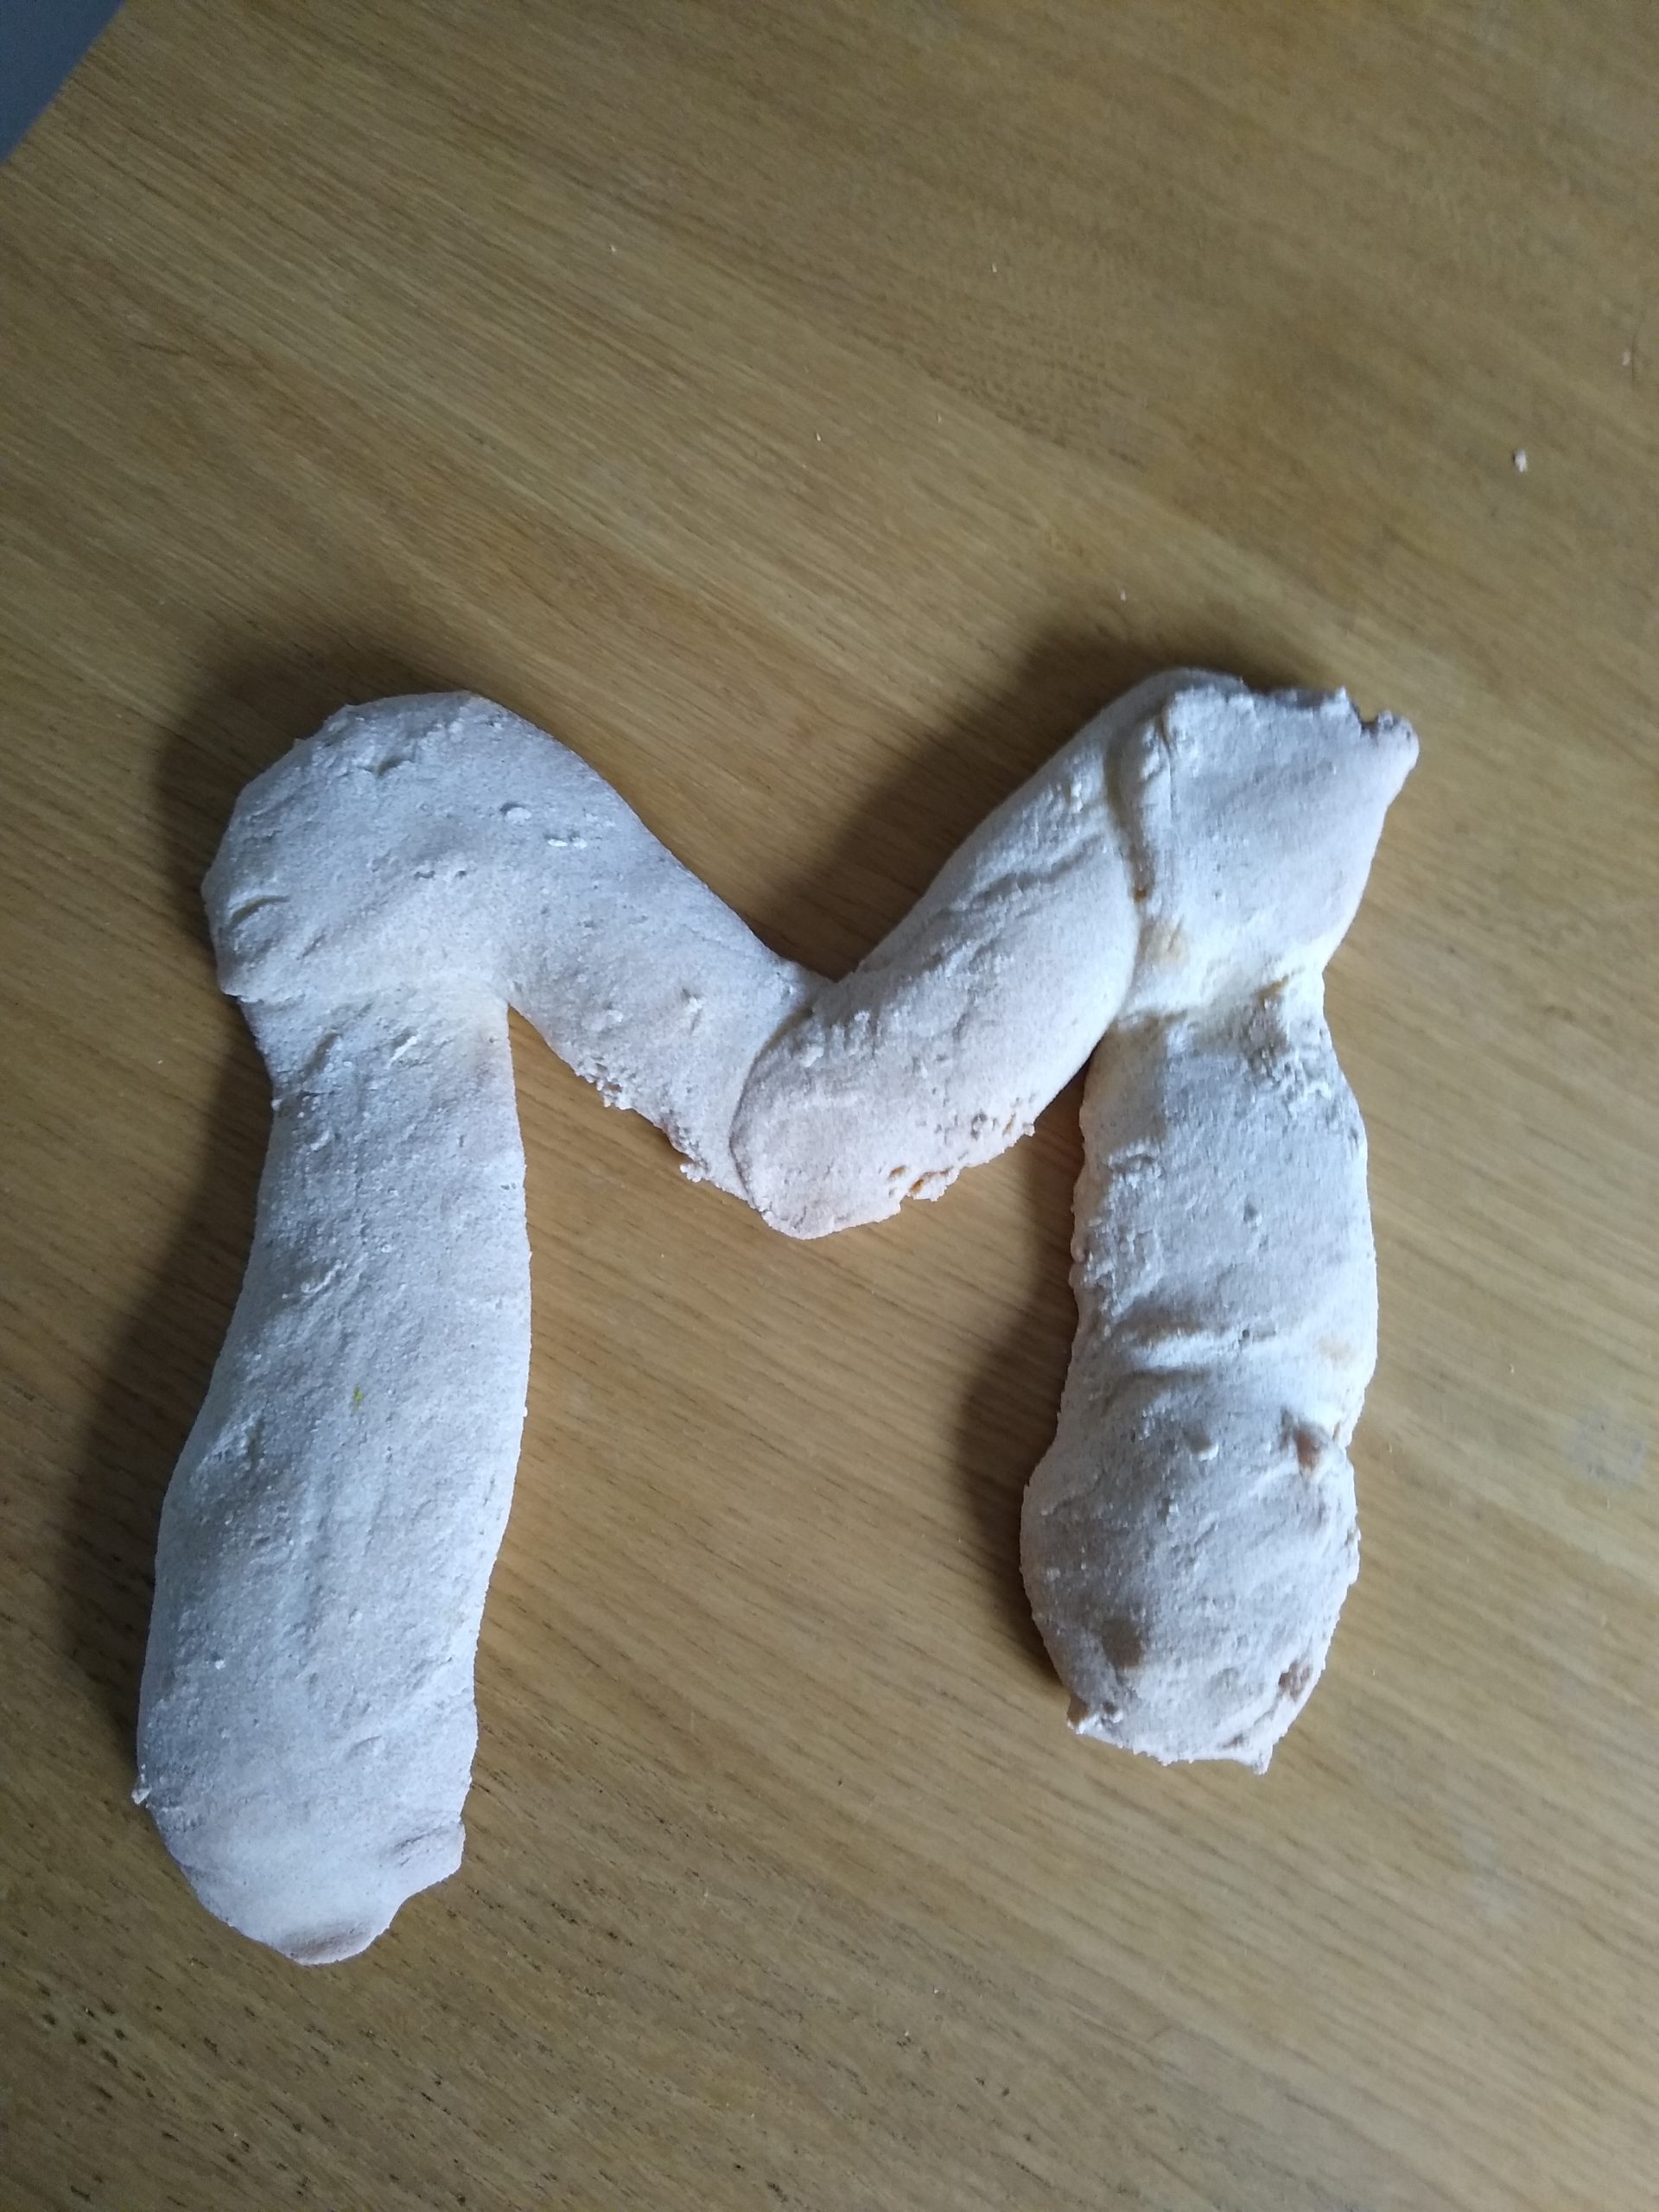 Salt dough creation of an M